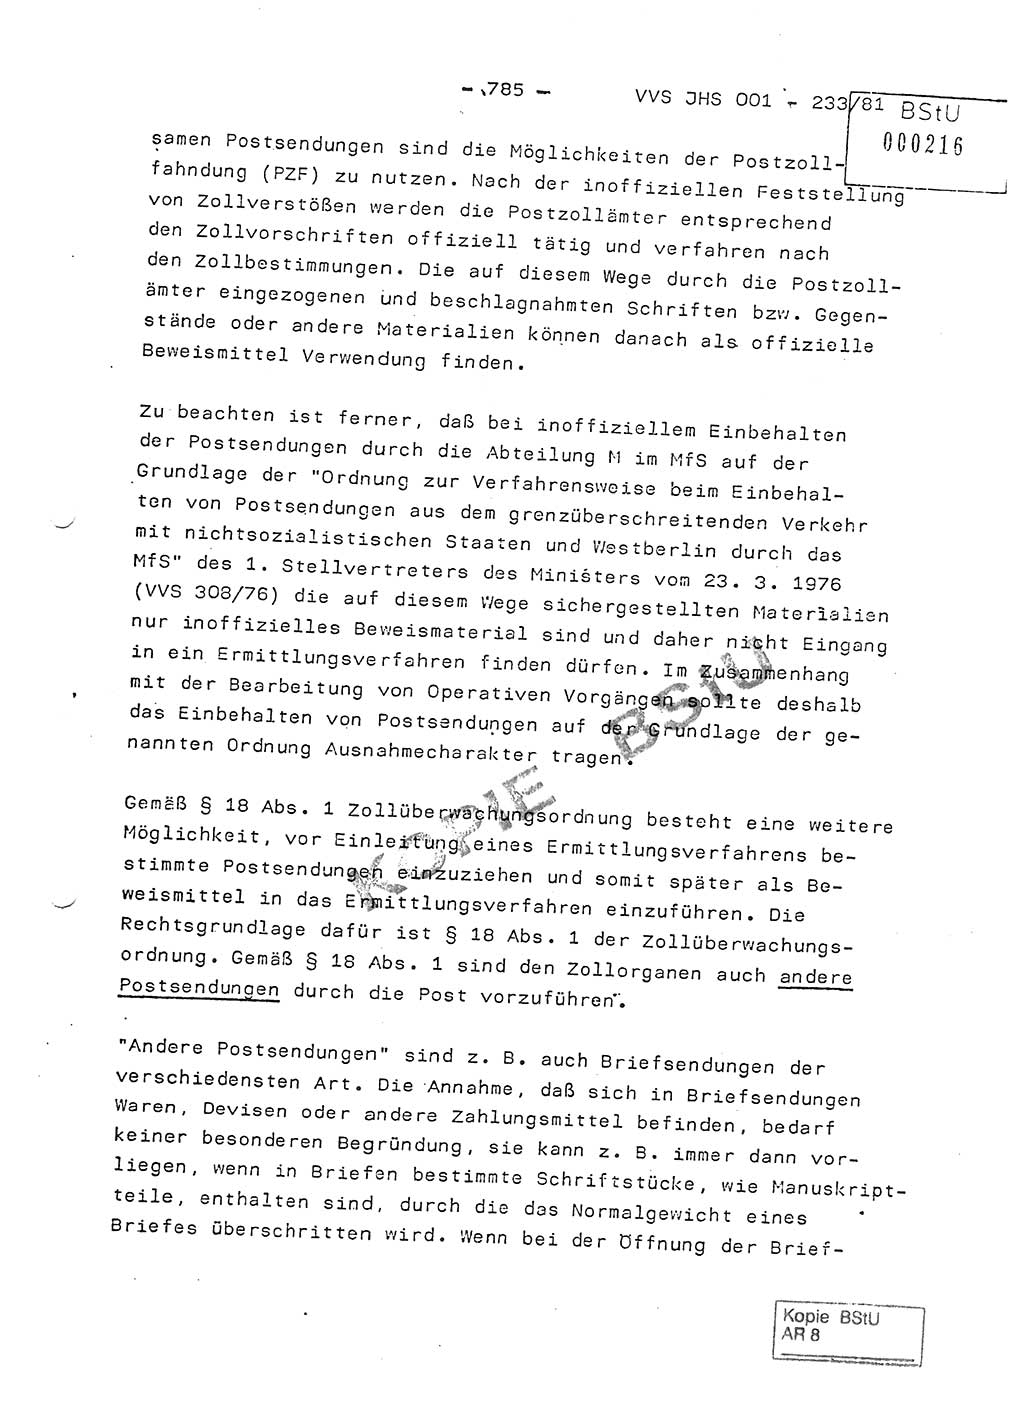 Dissertation Oberstleutnant Horst Zank (JHS), Oberstleutnant Dr. Karl-Heinz Knoblauch (JHS), Oberstleutnant Gustav-Adolf Kowalewski (HA Ⅸ), Oberstleutnant Wolfgang Plötner (HA Ⅸ), Ministerium für Staatssicherheit (MfS) [Deutsche Demokratische Republik (DDR)], Juristische Hochschule (JHS), Vertrauliche Verschlußsache (VVS) o001-233/81, Potsdam 1981, Blatt 785 (Diss. MfS DDR JHS VVS o001-233/81 1981, Bl. 785)